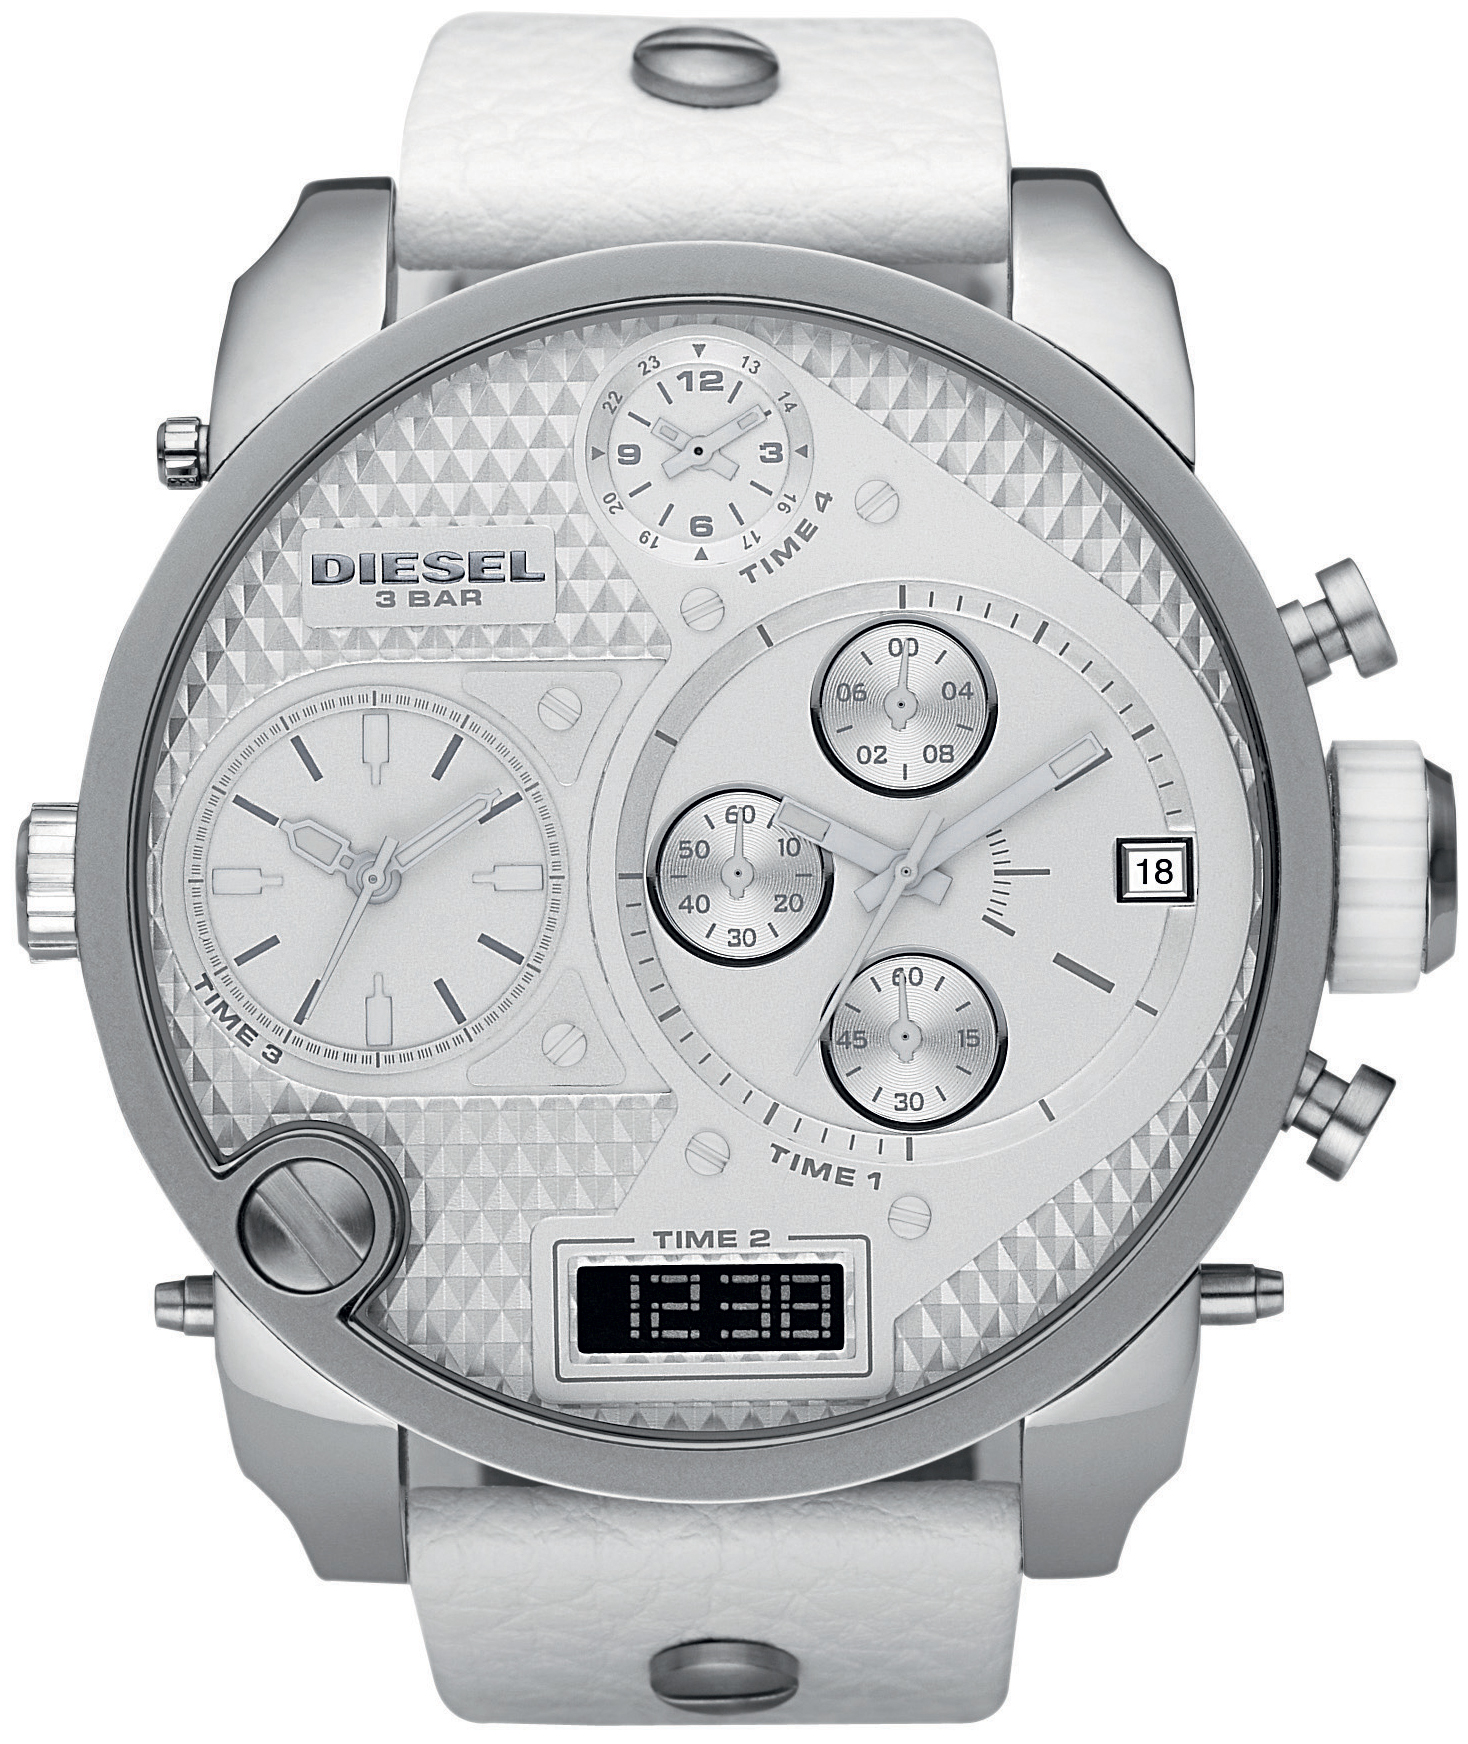 Diesel DZ7194 - Oversized White Ghost Watch • Watchard.com